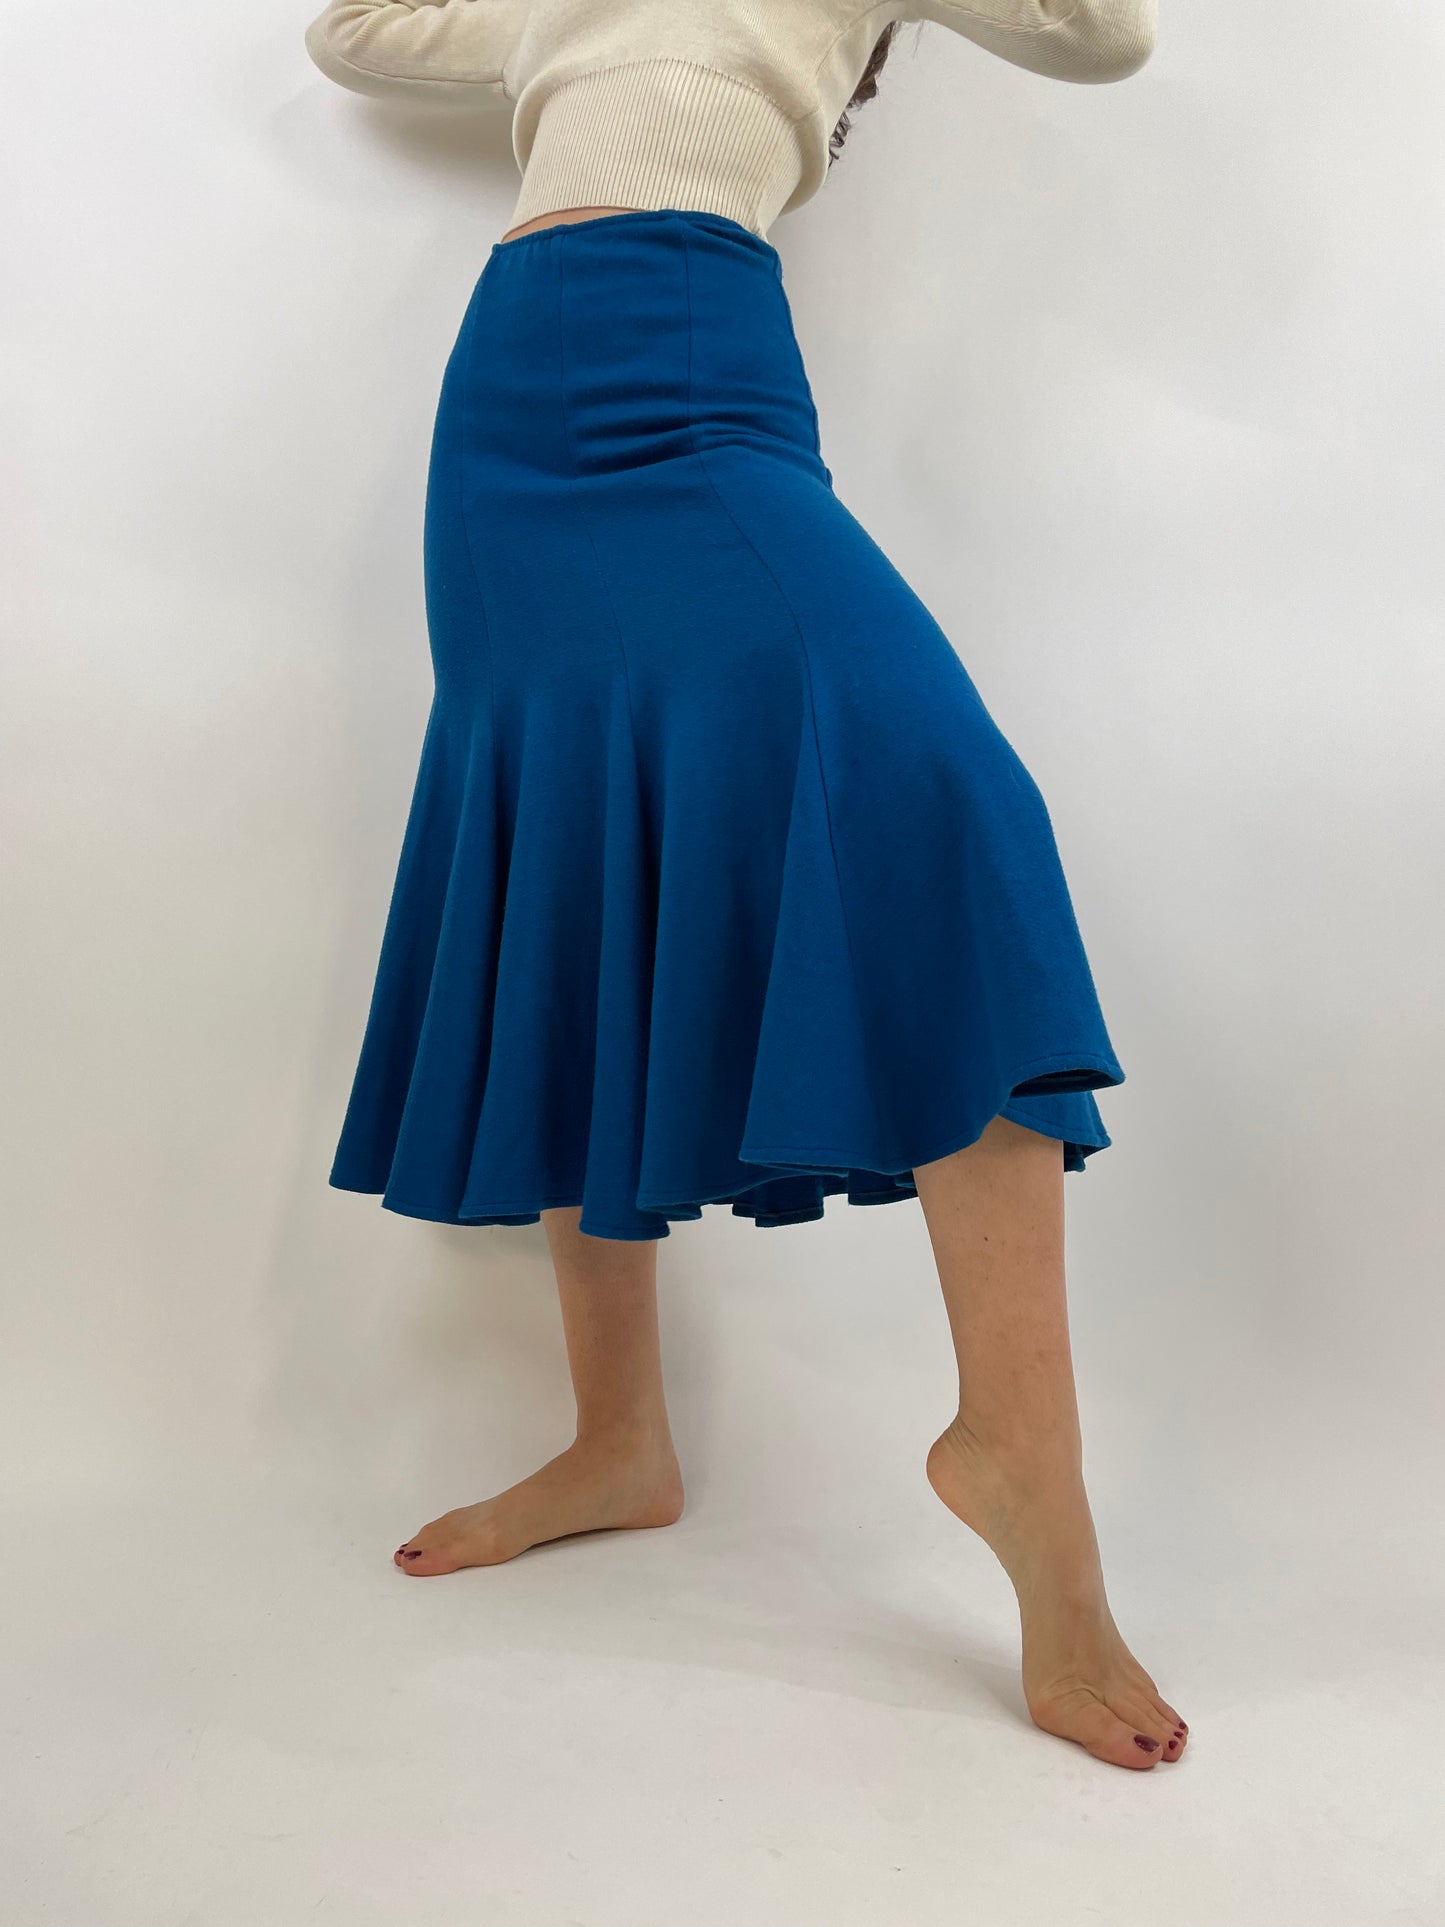 Norma Kamali 1980s skirt